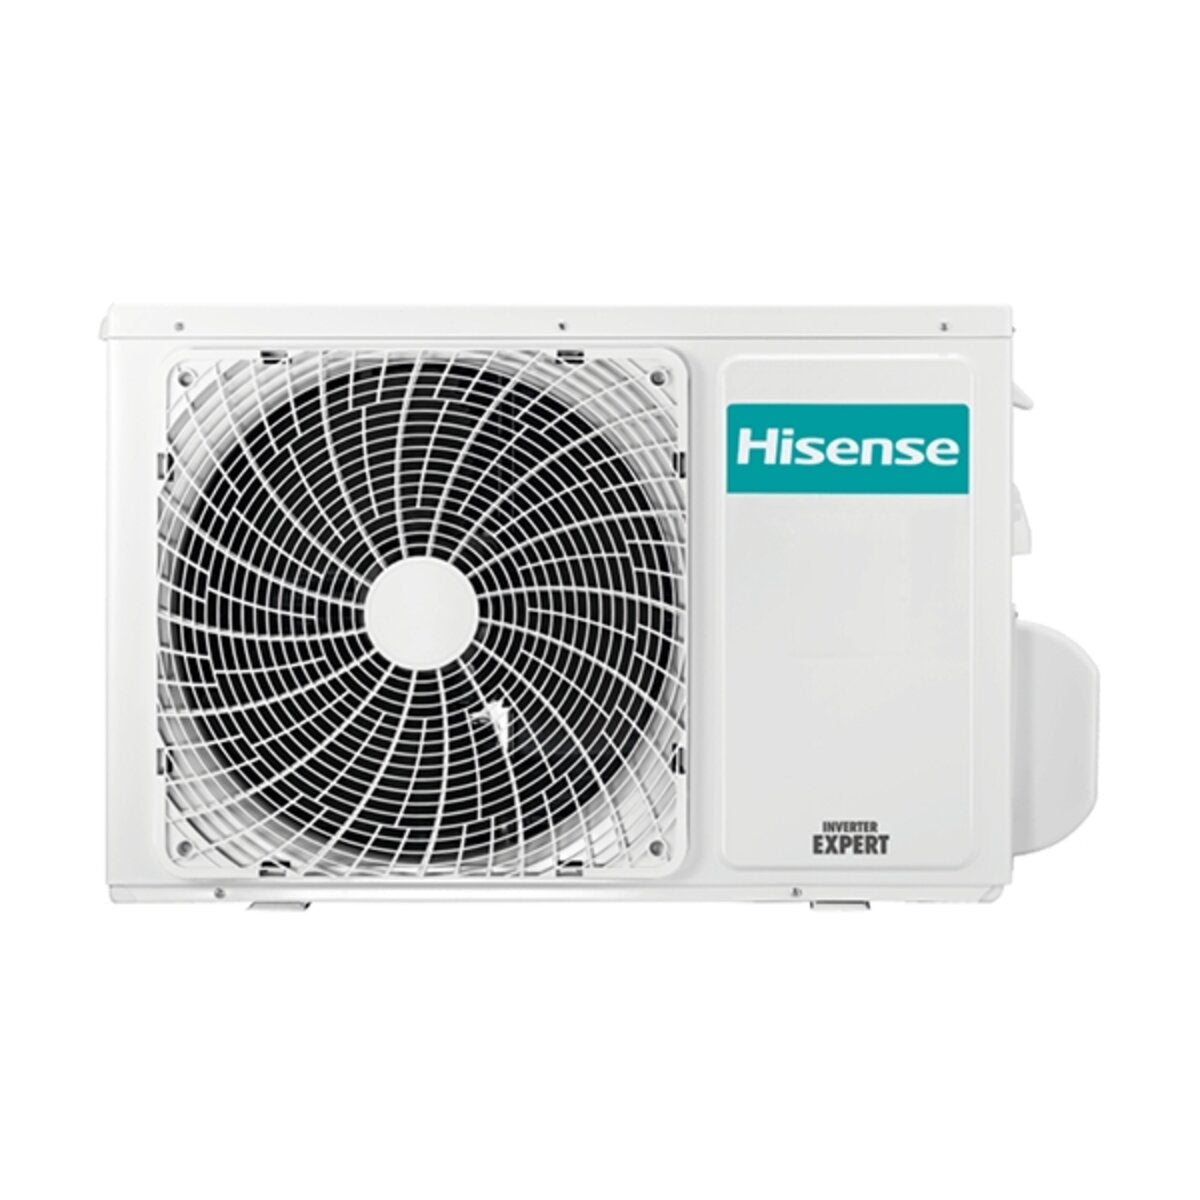 Hisense Hi-Comfort climatiseur double split 12000+12000 BTU onduleur A++ wifi unité extérieure 5.0 kW